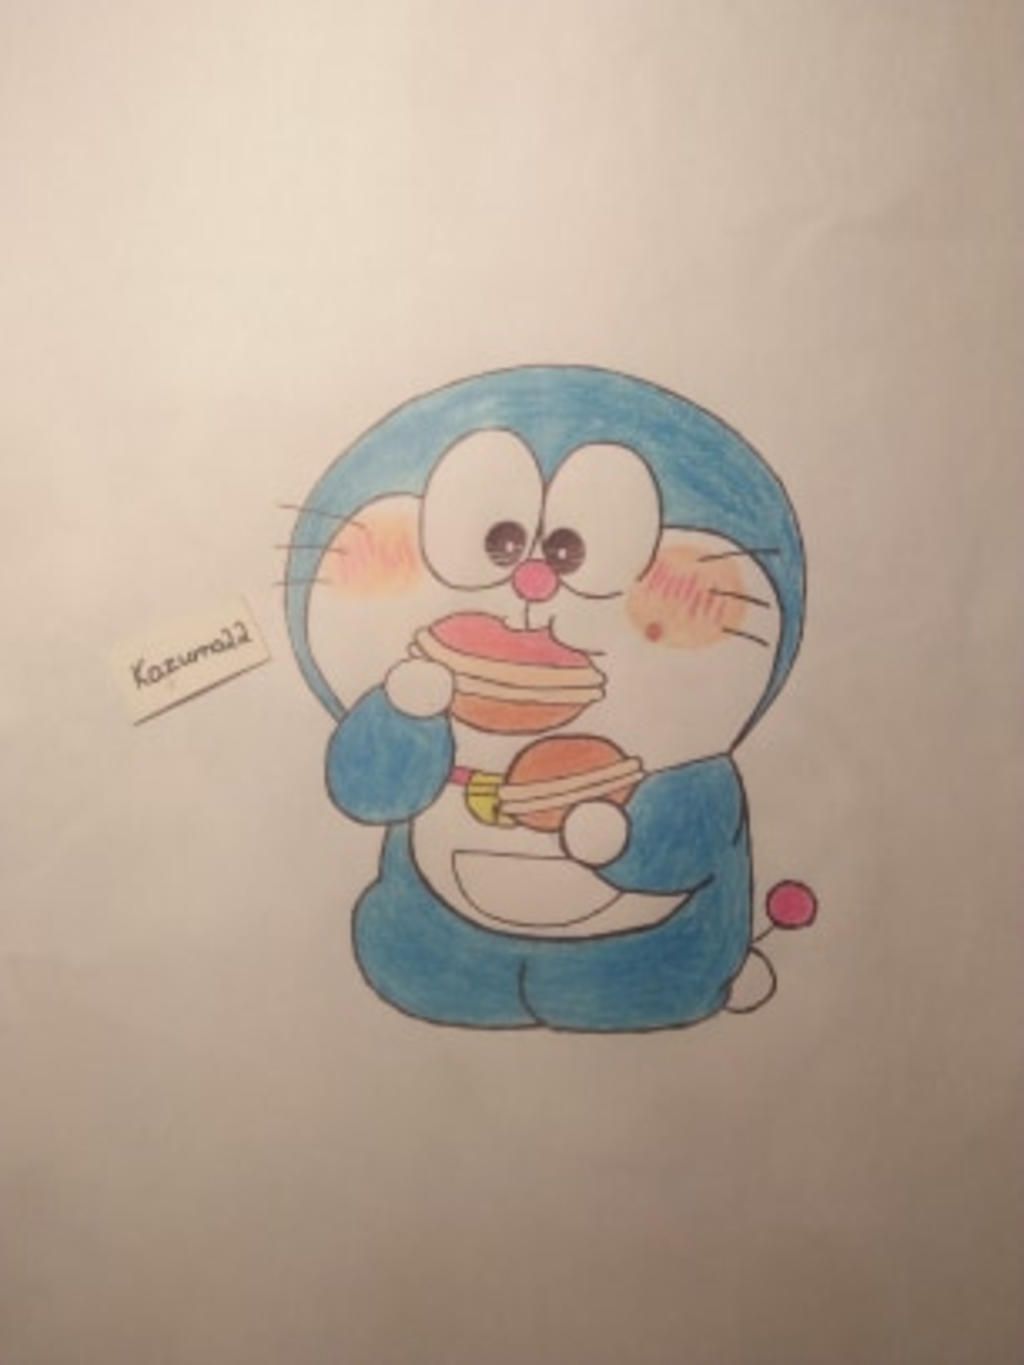 Vẽ Doraemon: Bạn yêu thích Doraemon nhưng chưa biết cách vẽ chú mèo máy đáng yêu này sao cho đúng và đẹp? Hãy xem ngay bức ảnh này và khám phá các bước vẽ Doraemon cực kỳ đơn giản mà dễ thực hiện. Bạn sẽ có thể tạo ra những bức vẽ Doraemon xinh đẹp và tự hào khi trình bày trước bạn bè.